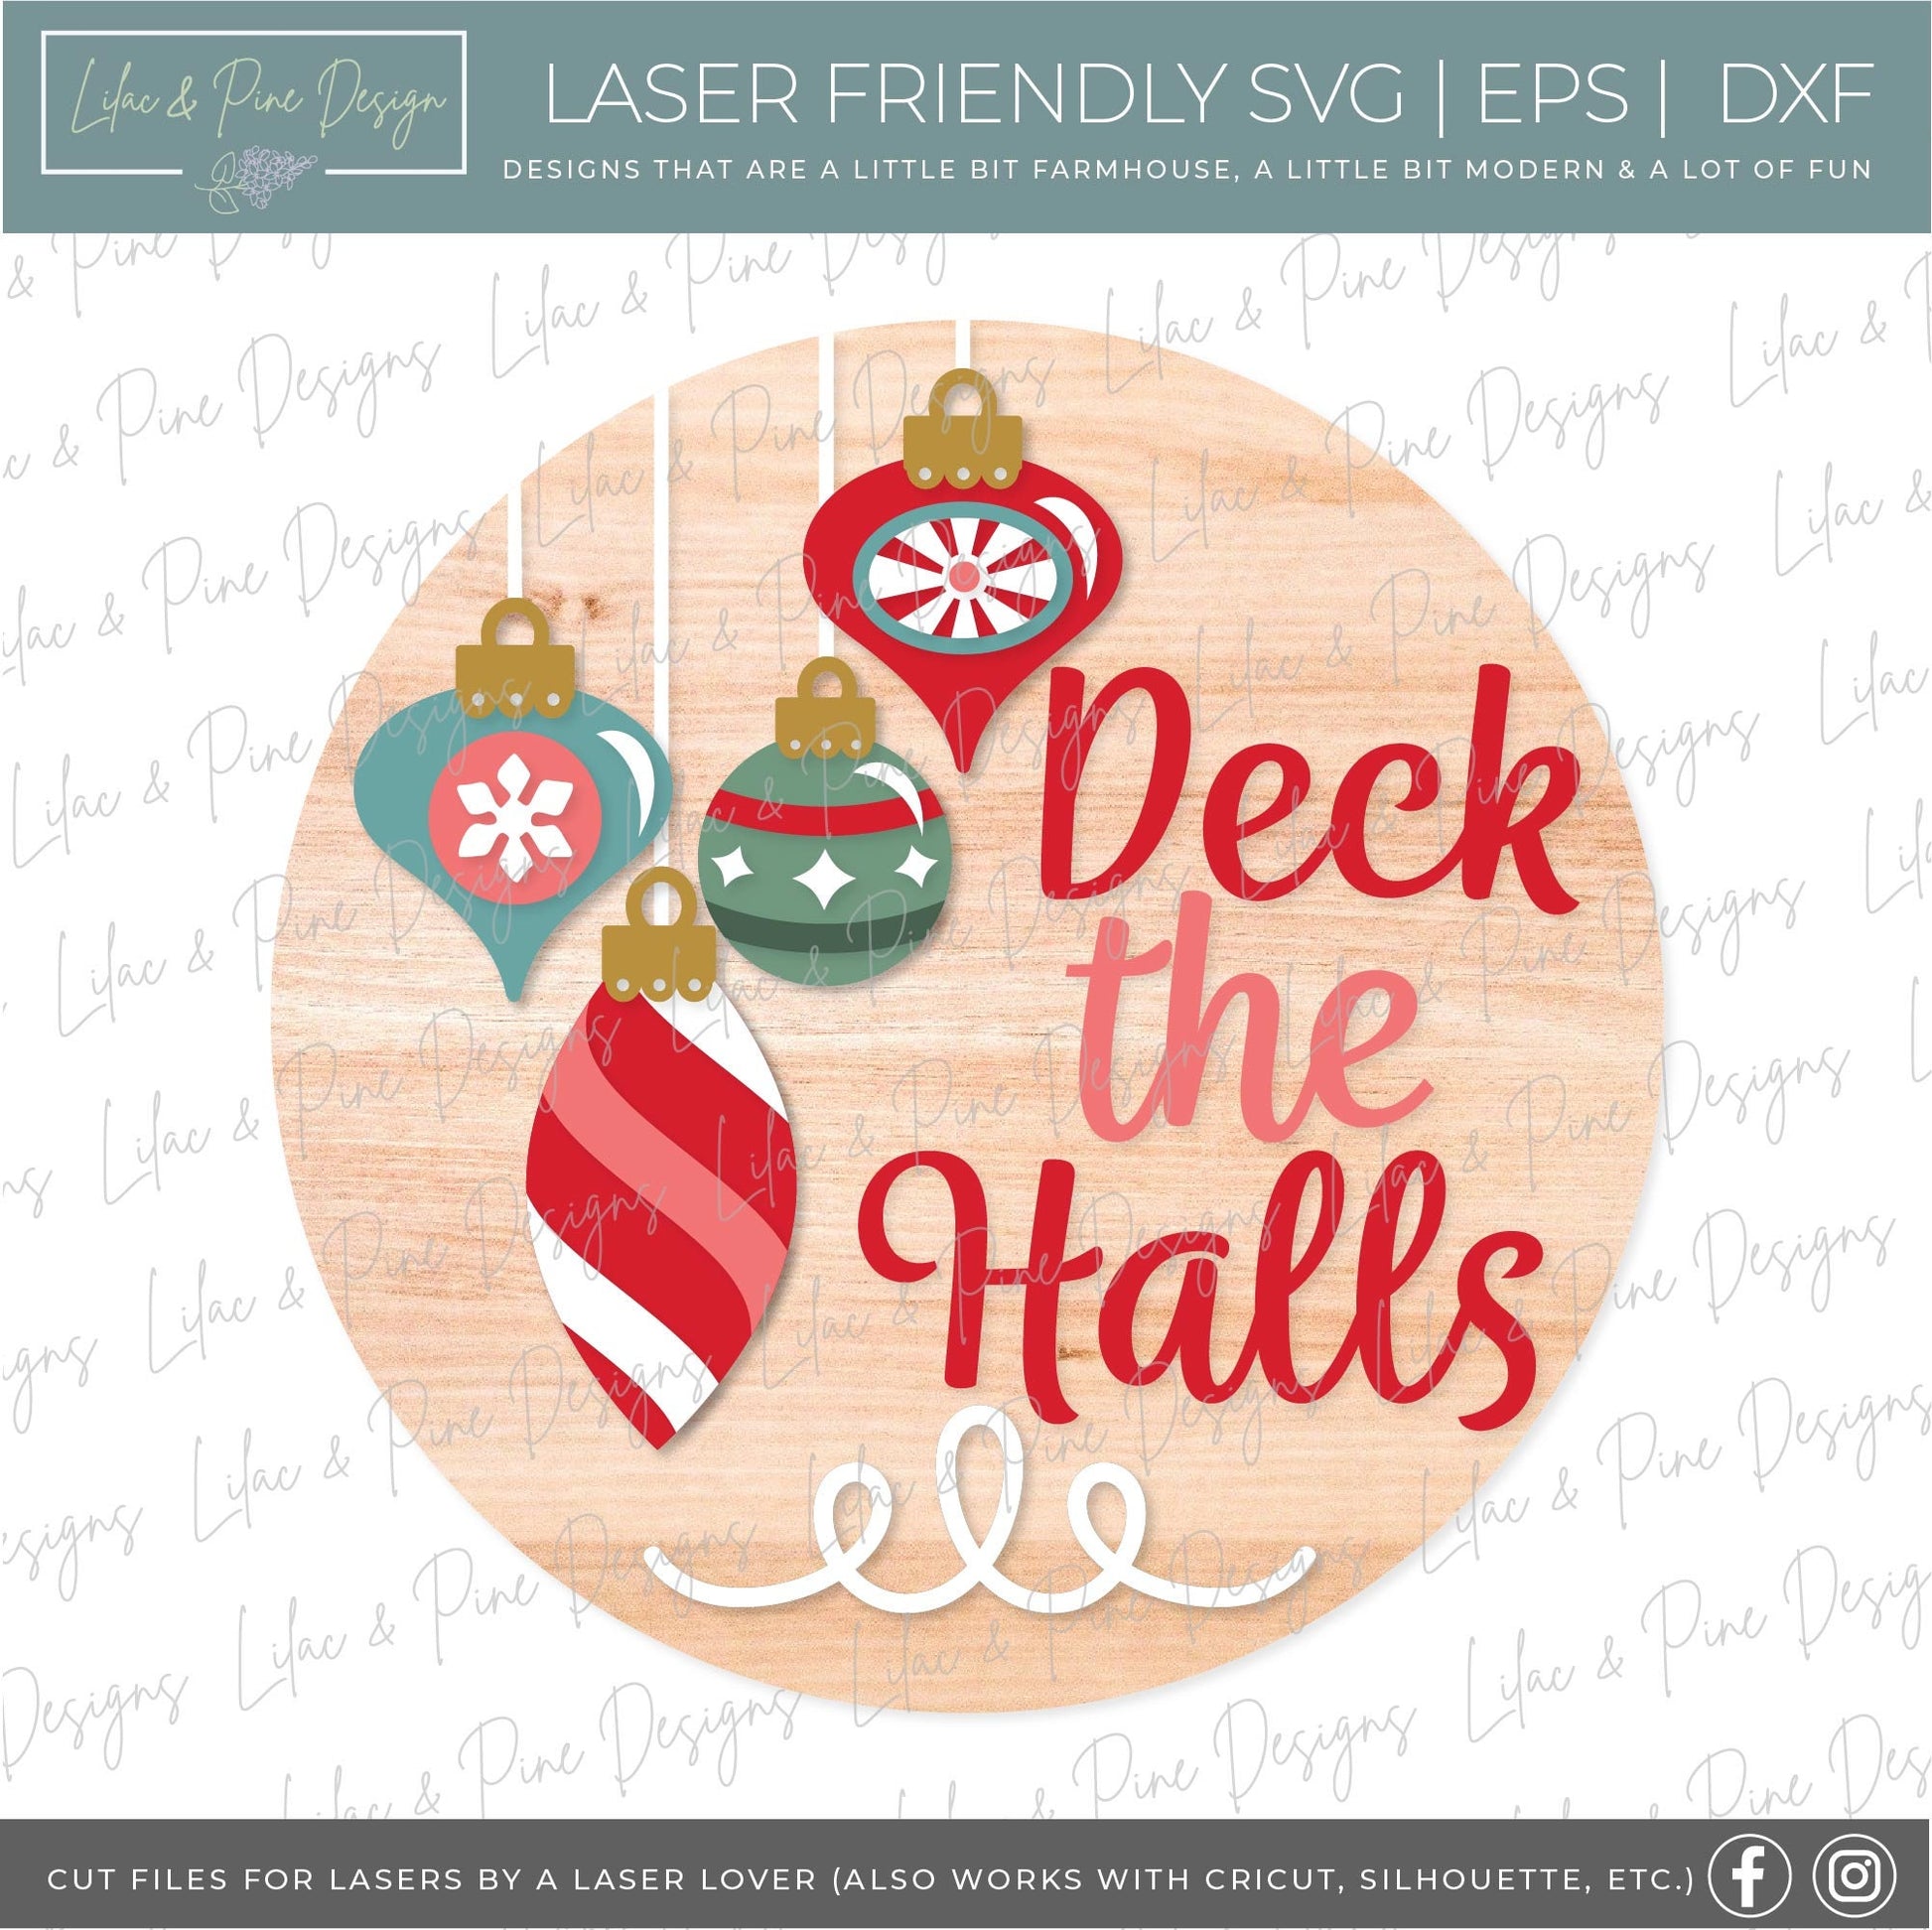 Deck the Halls door hanger SVG, Christmas welcome sign SVG, Vintage ornament round sign svg, Christmas decor, Glowforge SVG, laser cut file